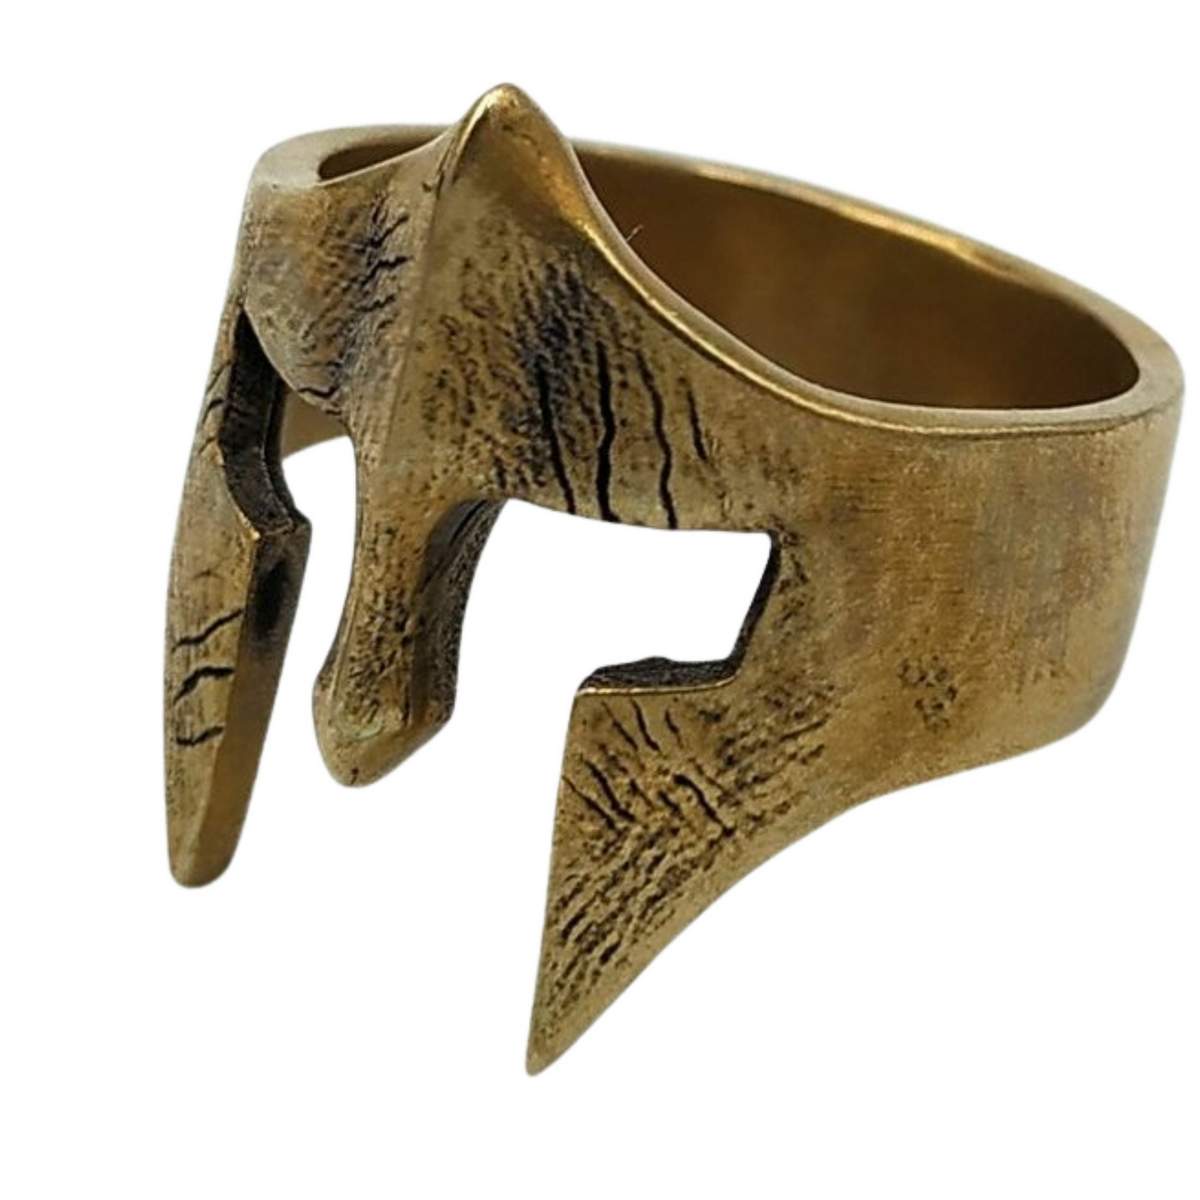 Spartan warrior bronze ring